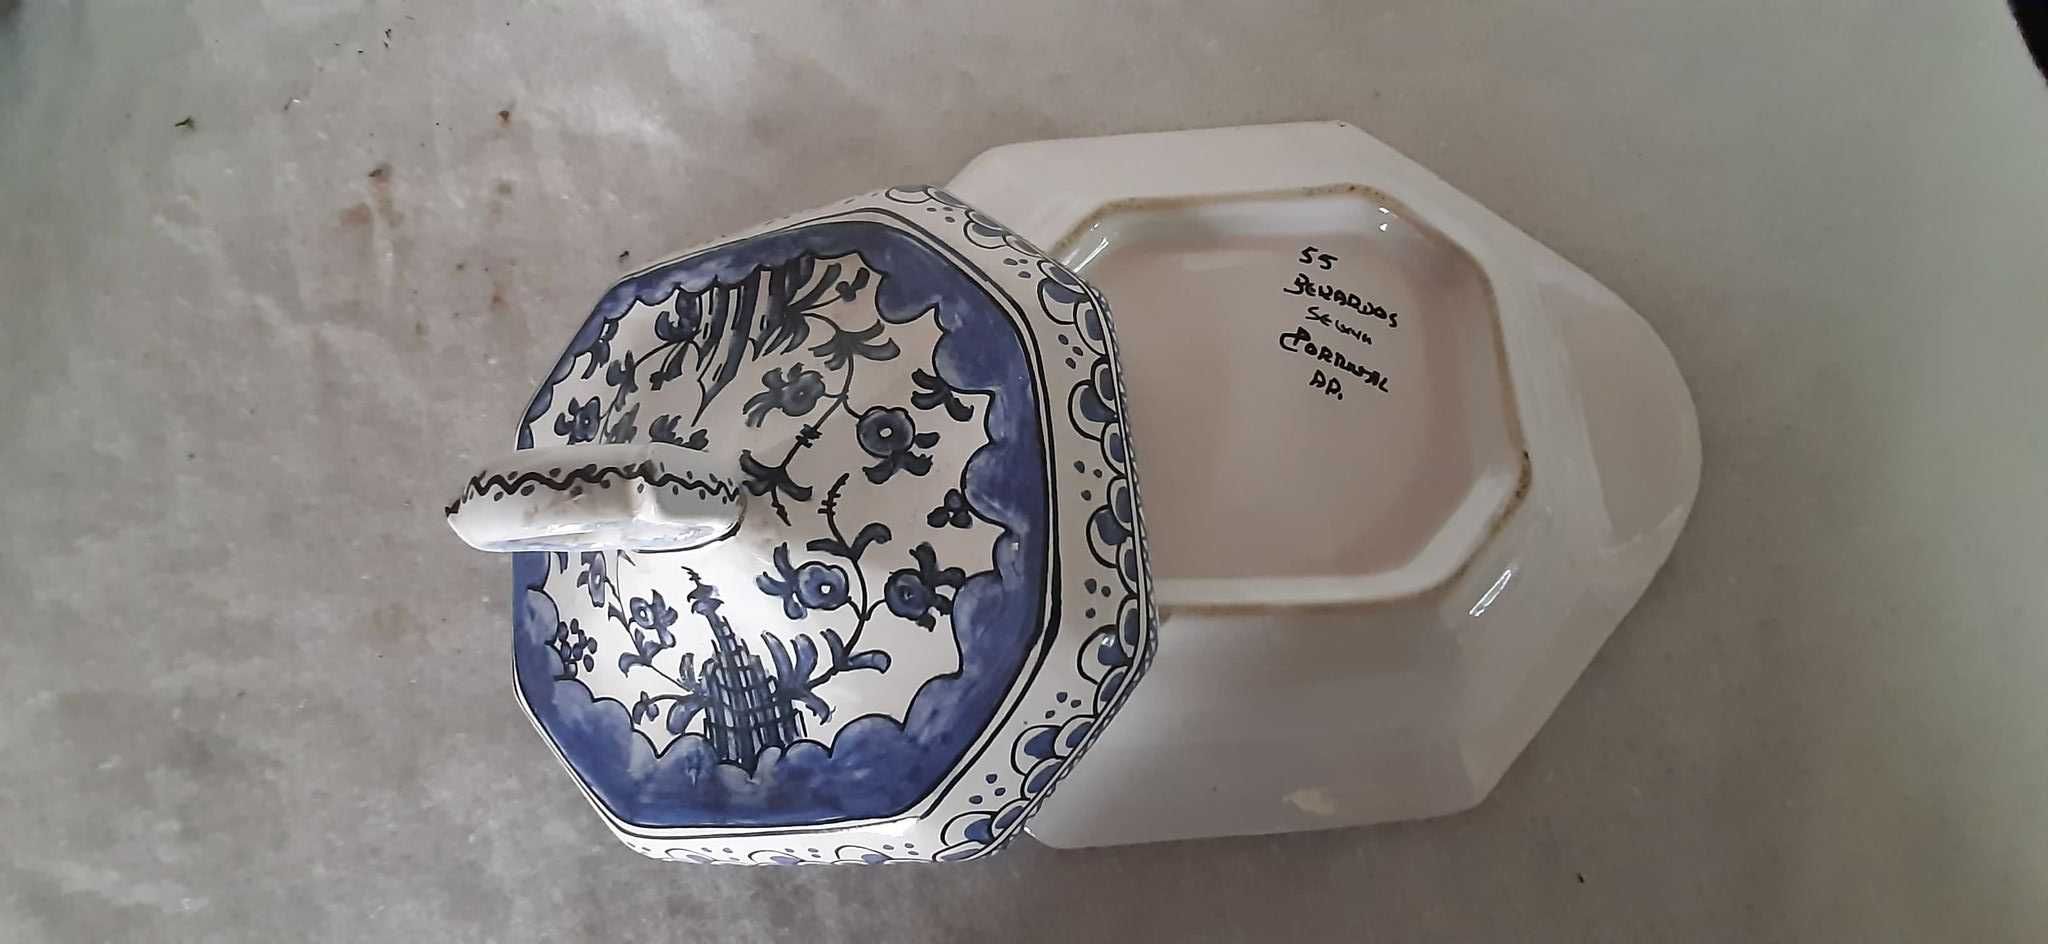 Manteigueira em porcelana, pintada à mão